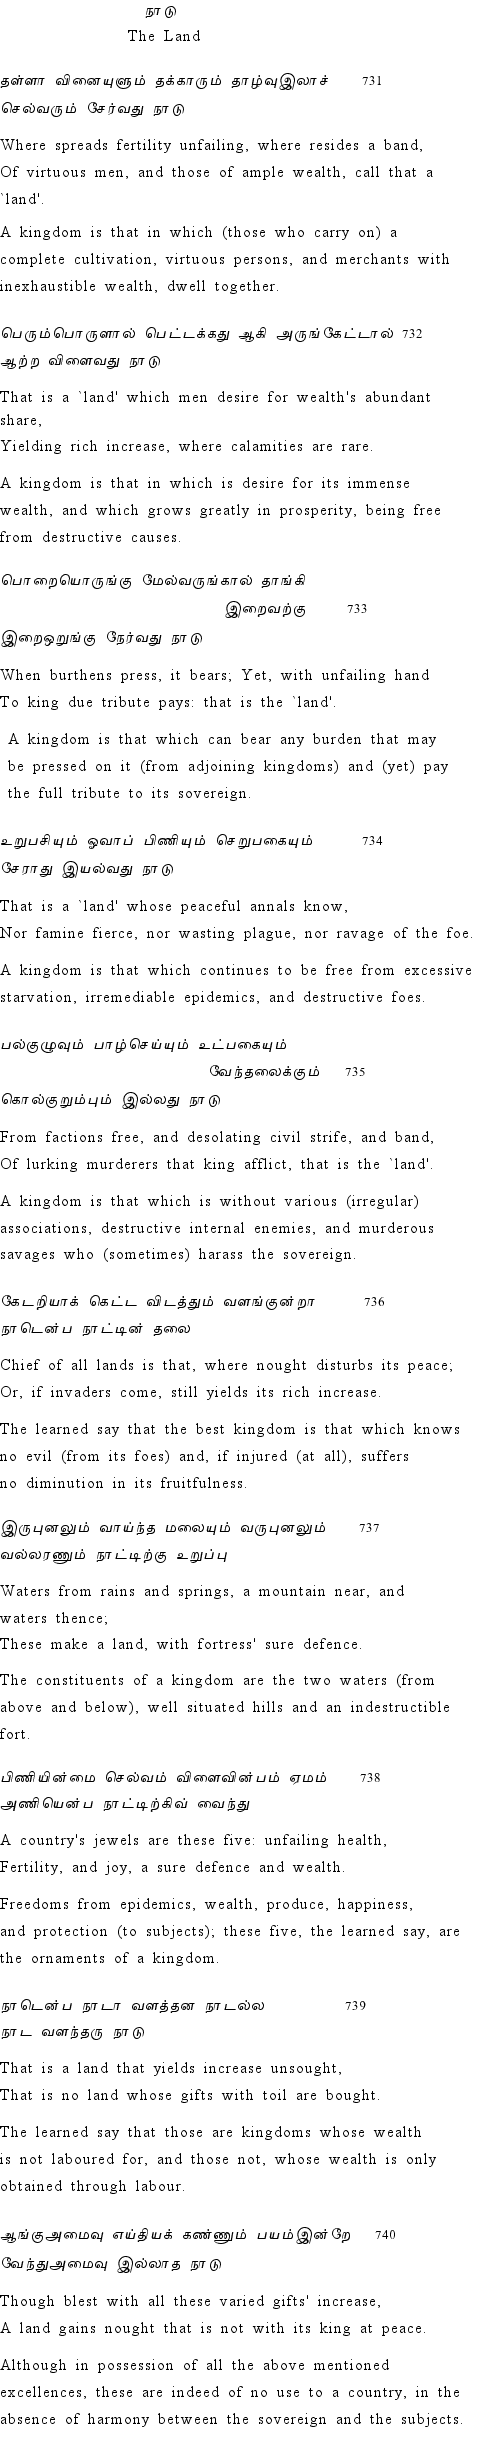 Text of Adhikaram 74